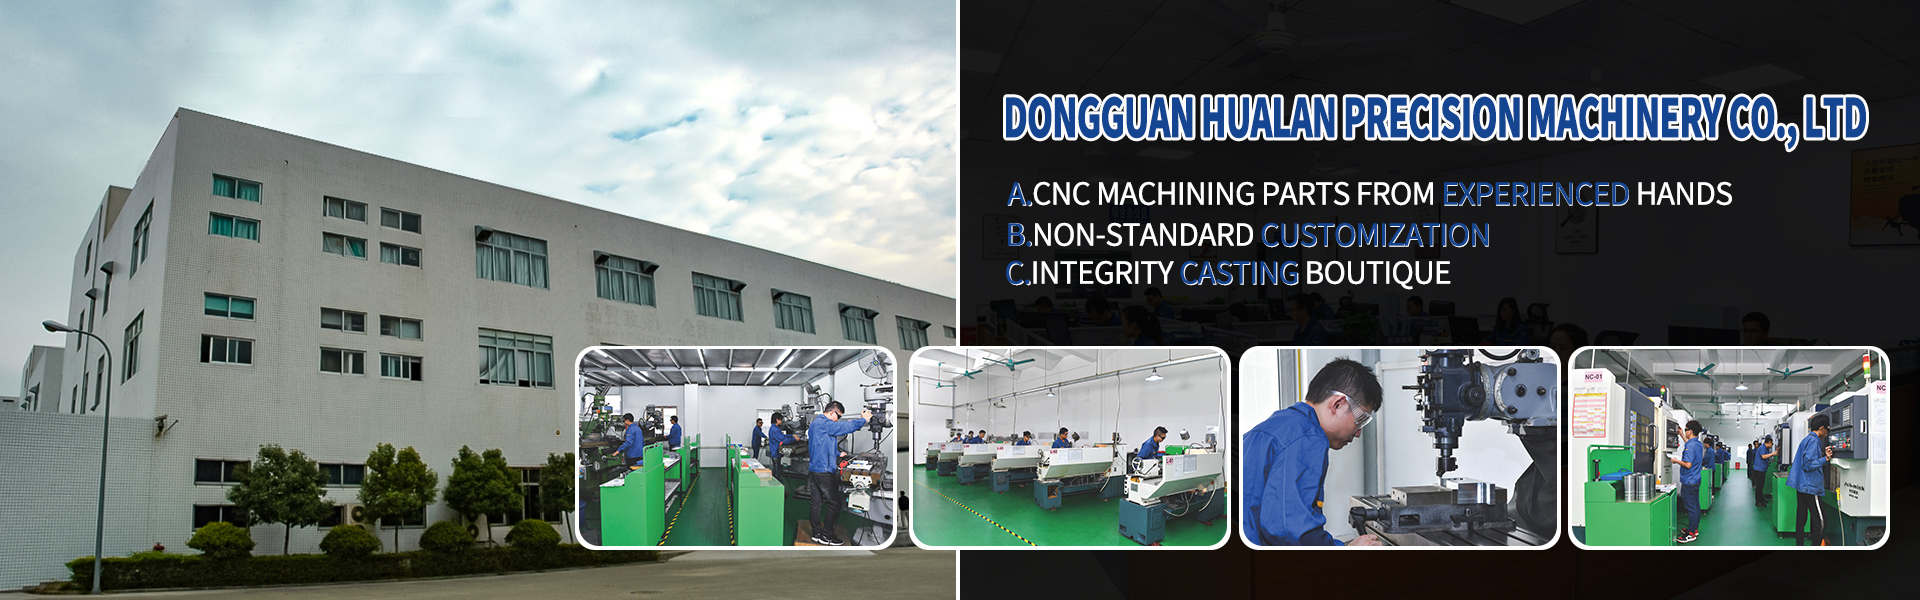 Bộ phận gia công CNC, Turing and phay, cắt dòng,Dongguan Hualan Precision Machinery Co., LTD